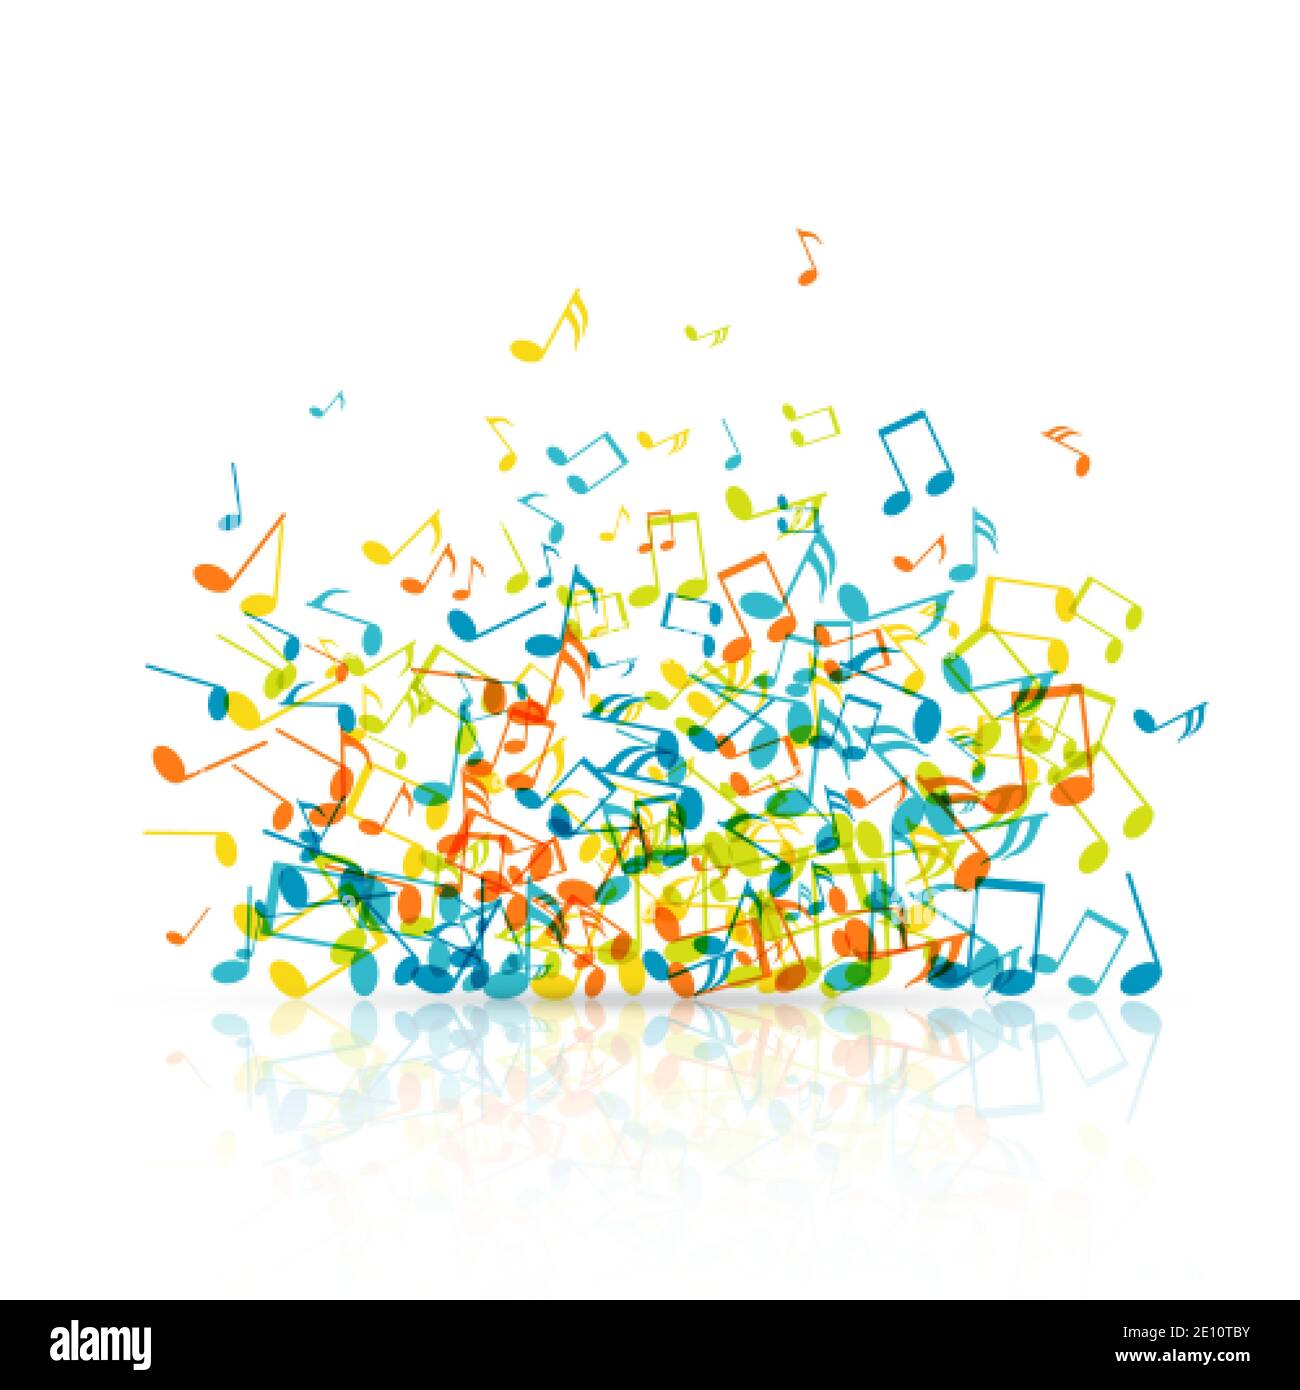 Abstrakter Musikhintergrund mit farbigen Noten-Symbolen. Vektorgrafik isoliert auf Weiß Stock Vektor